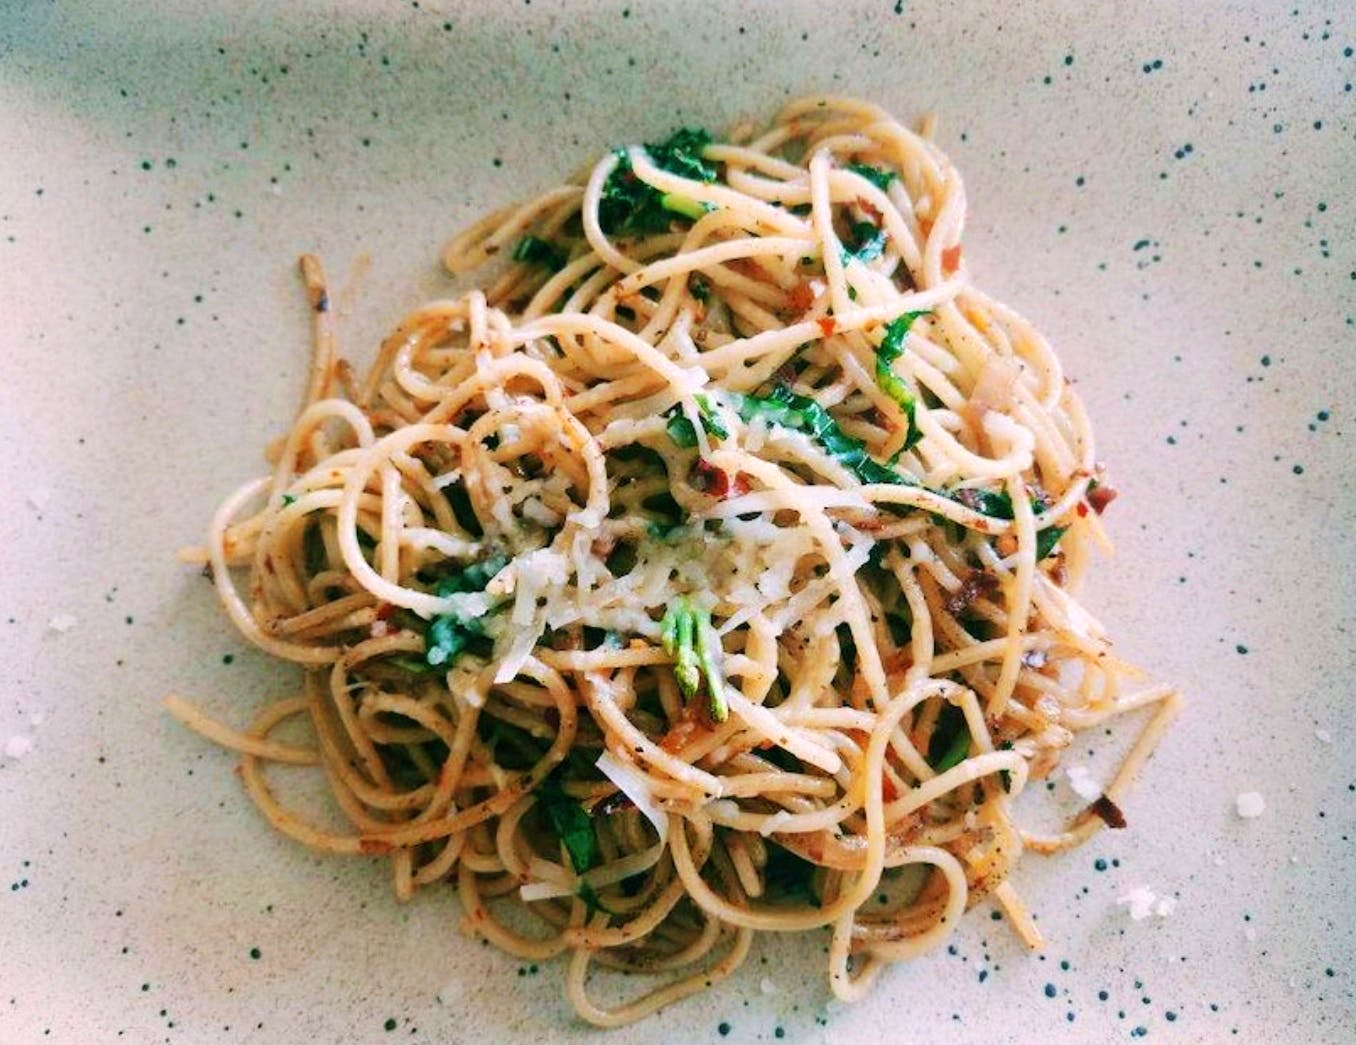 Cuisine,Food,Dish,Spaghetti,Noodle,Capellini,Bigoli,Spaghetti aglio e olio,Chow mein,Ingredient